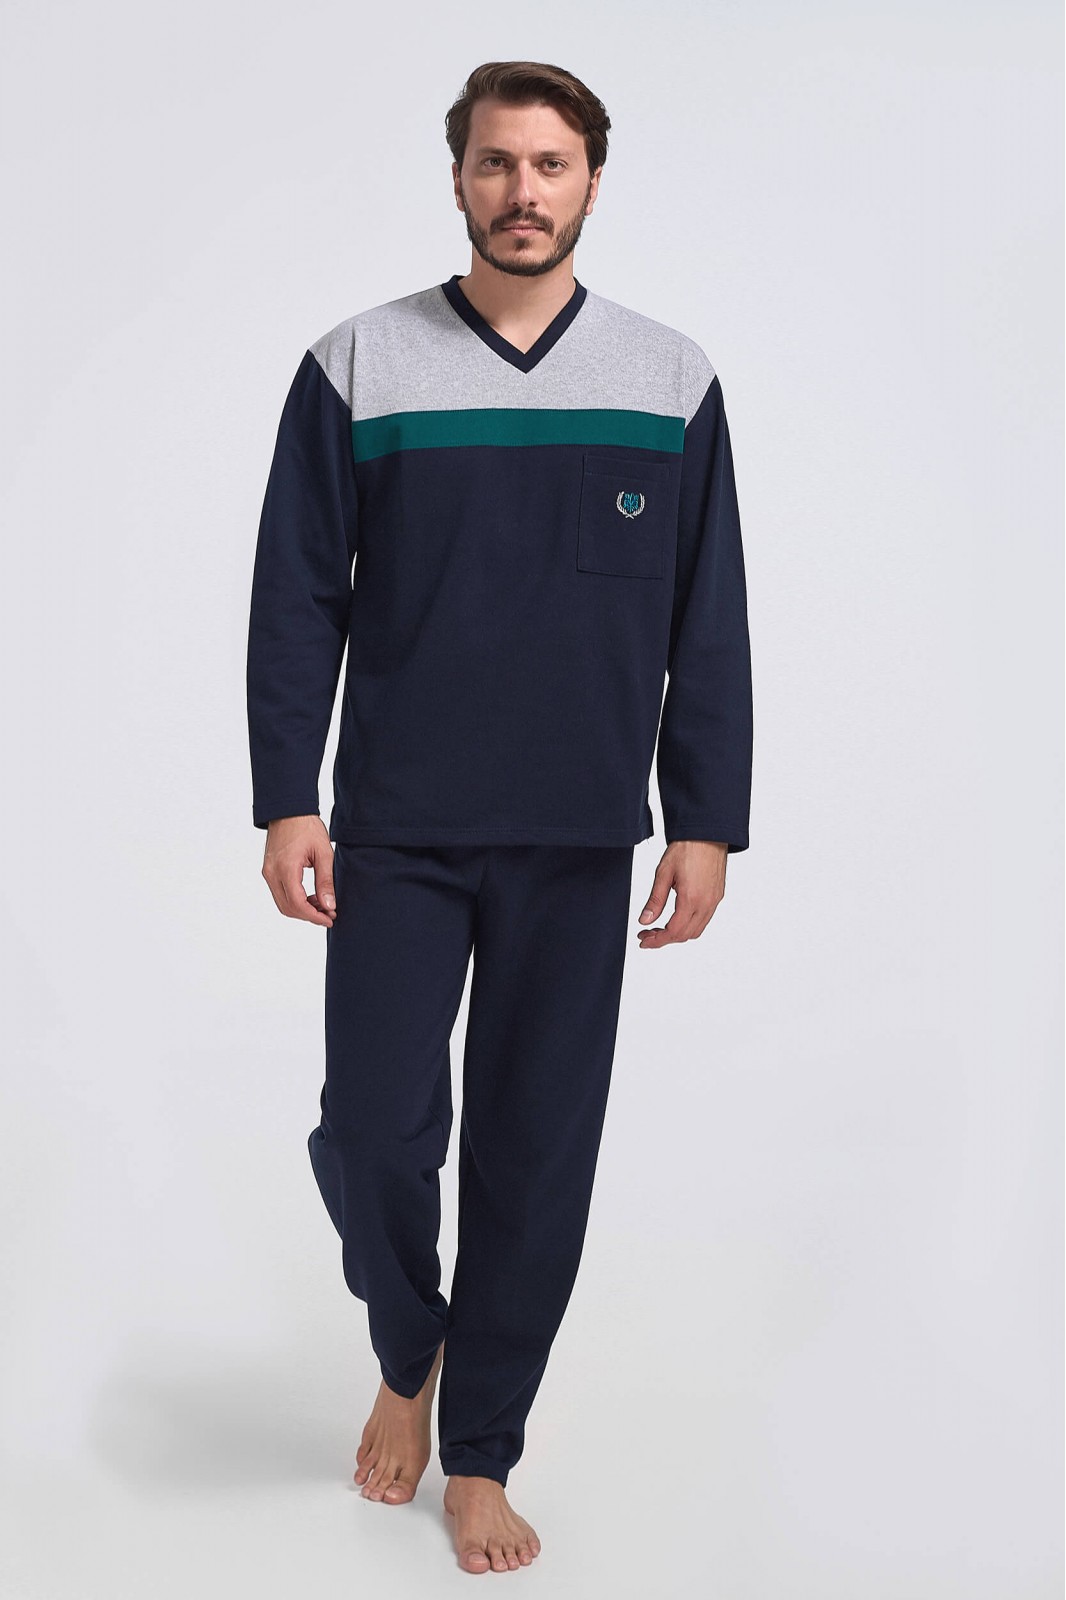 Mens pajamas LION classic with V - Winter 2021